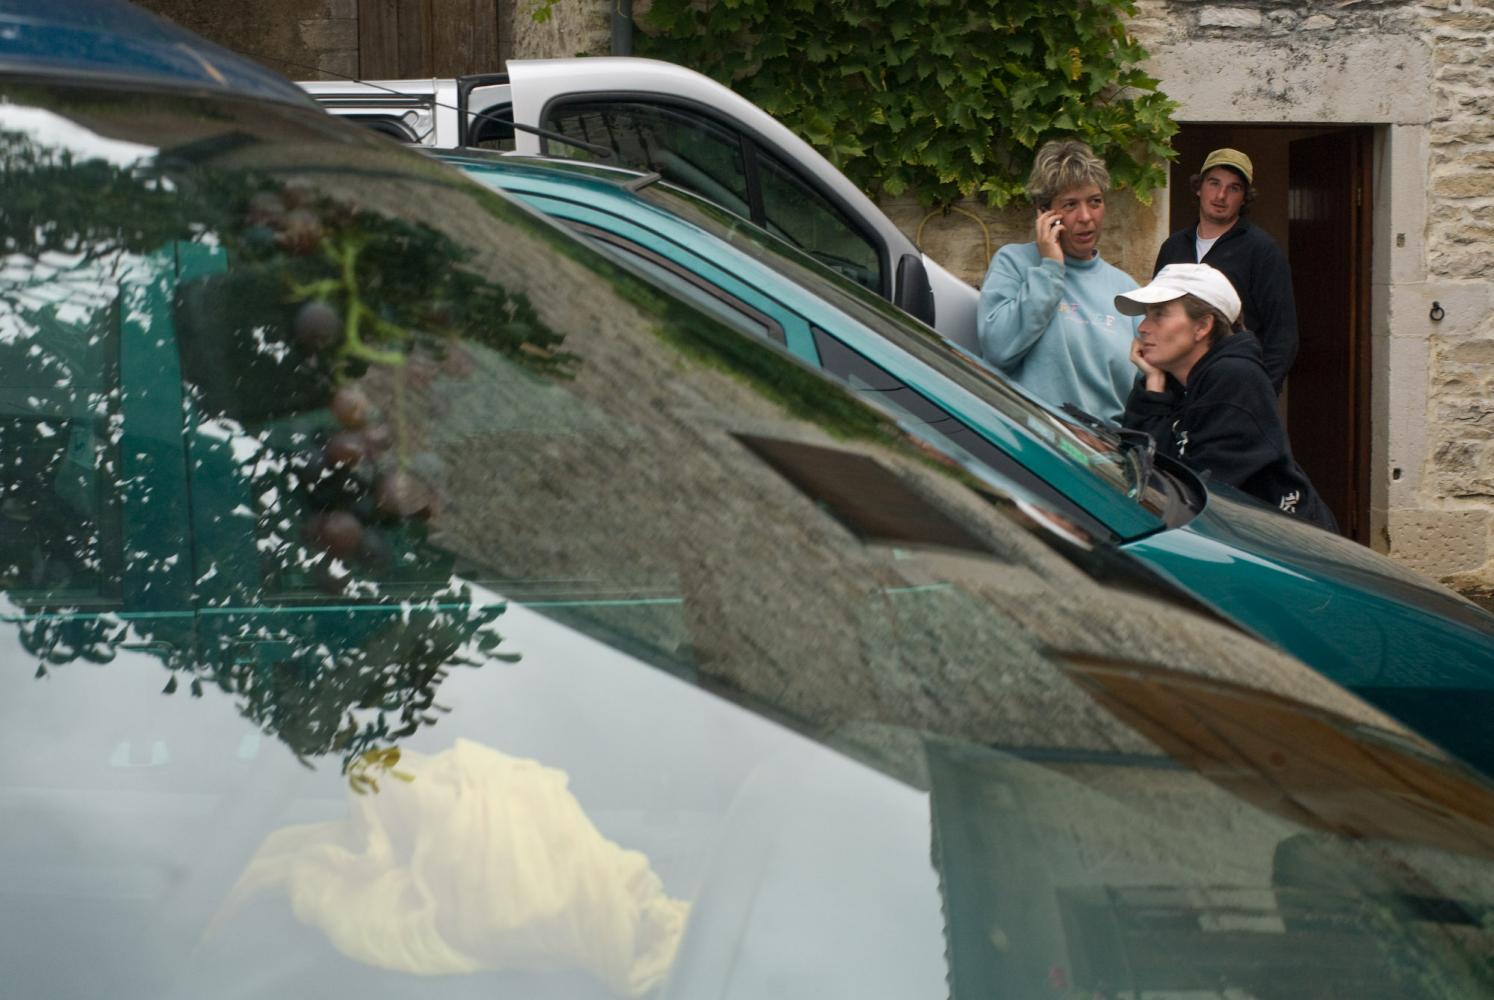 Perdus parmi les voitures, des vendangeurs attendent de repartir au travail après la pause déjeuner. Chassagne-Montrachet, Bourgogne, septembre 2009.